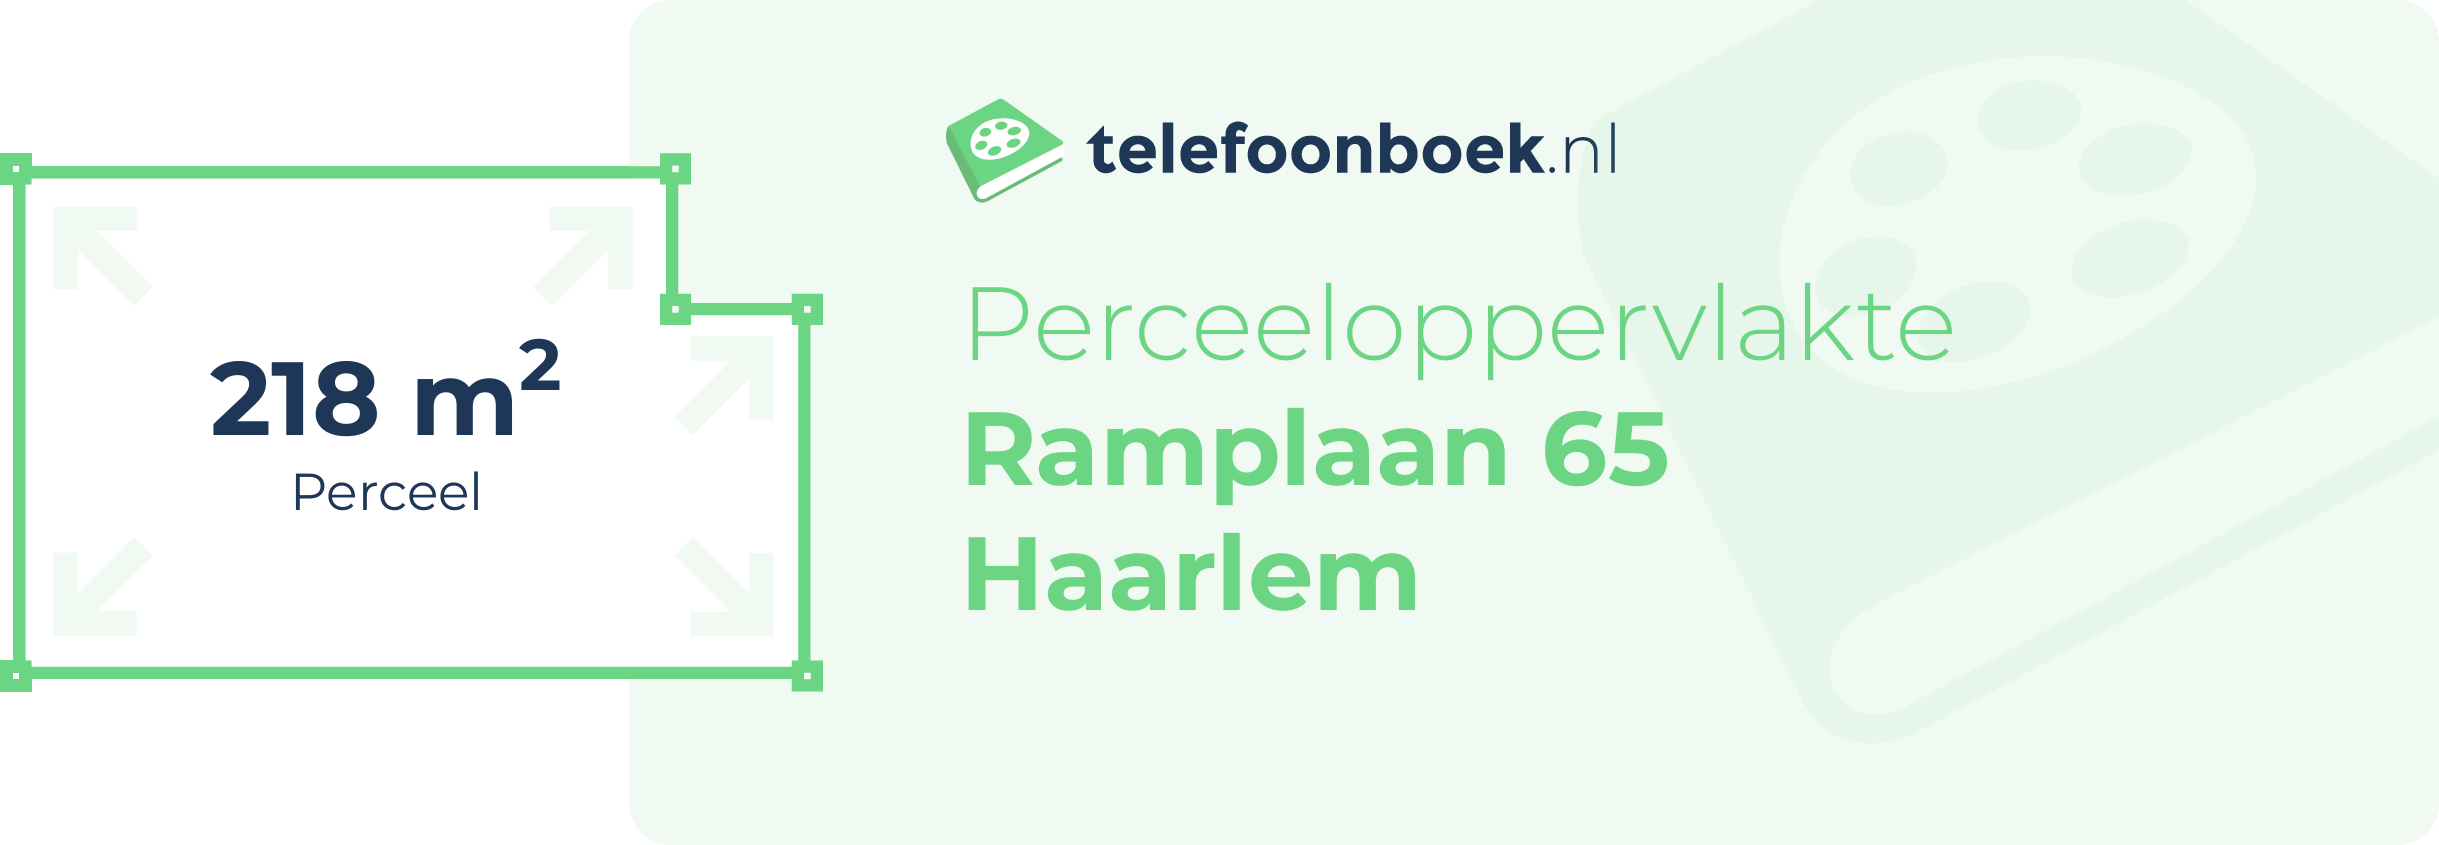 Perceeloppervlakte Ramplaan 65 Haarlem